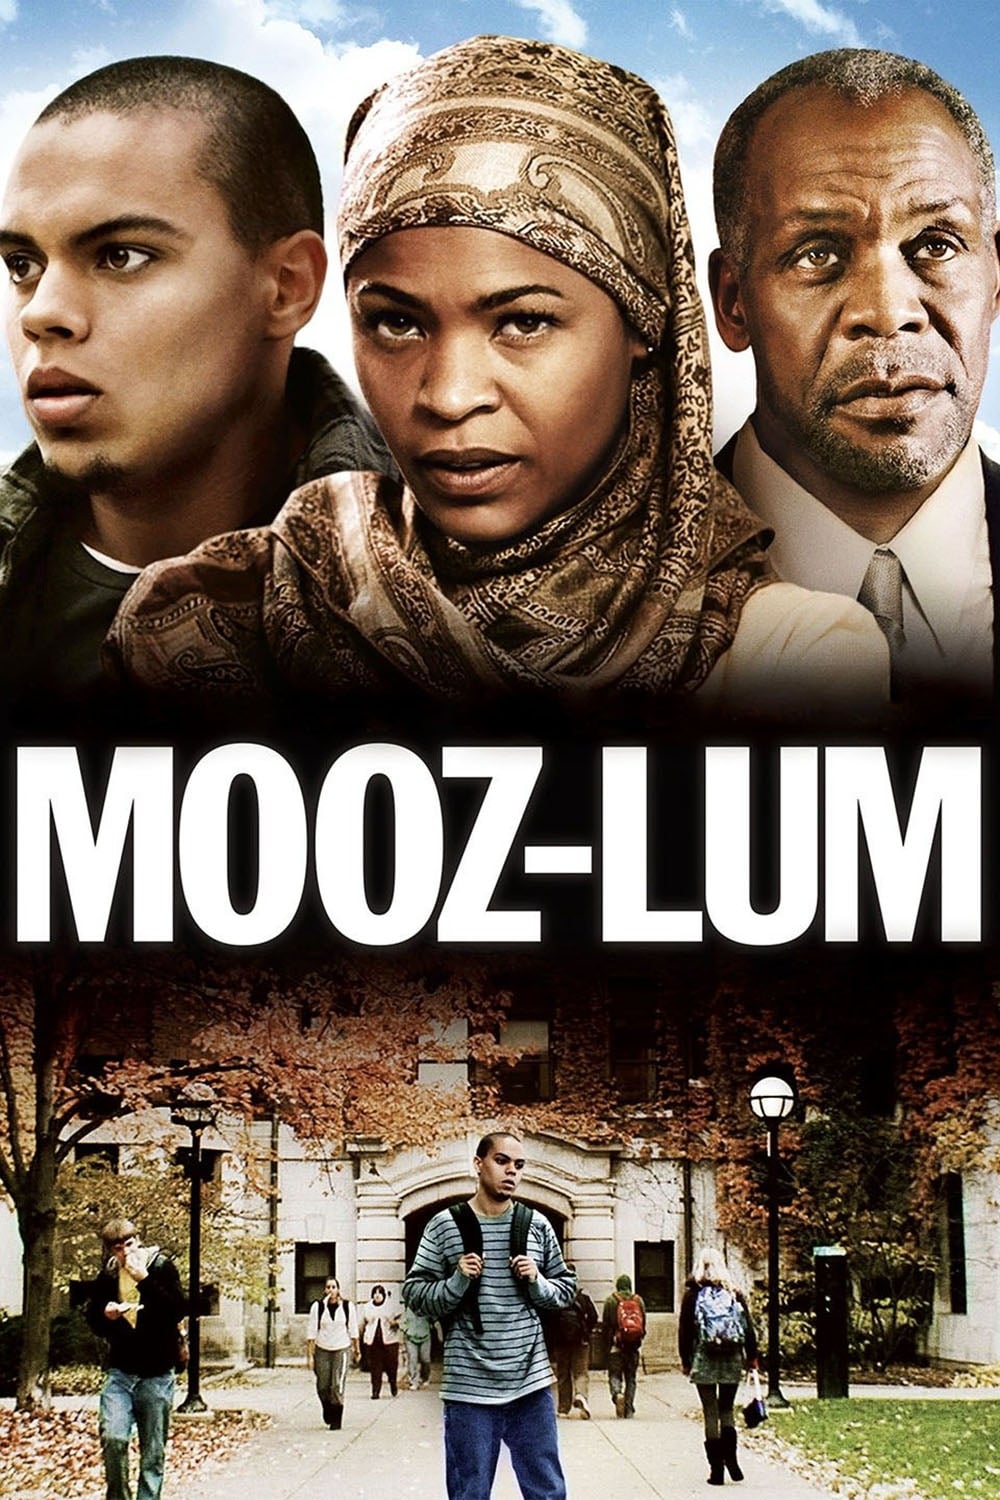 Mooz-lum (2011)